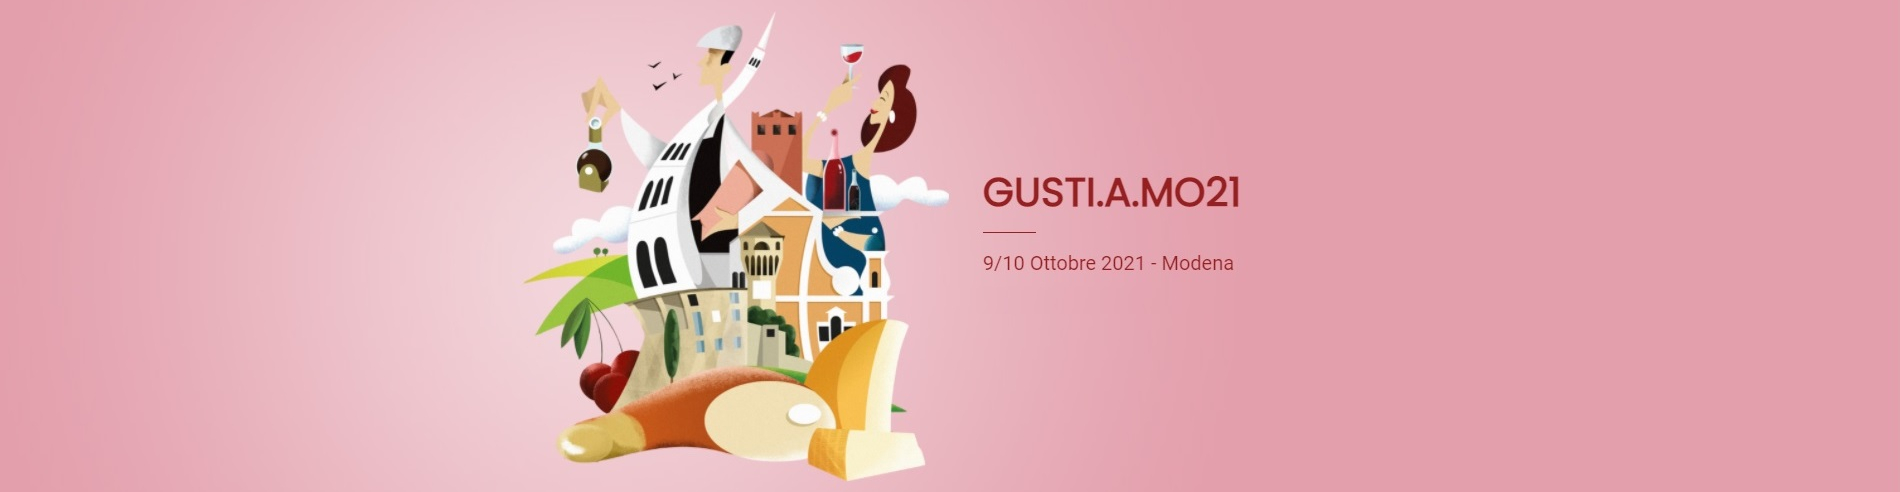 È tempo di GUSTI.A.MO21, da domani Modena capitale del turismo del gusto